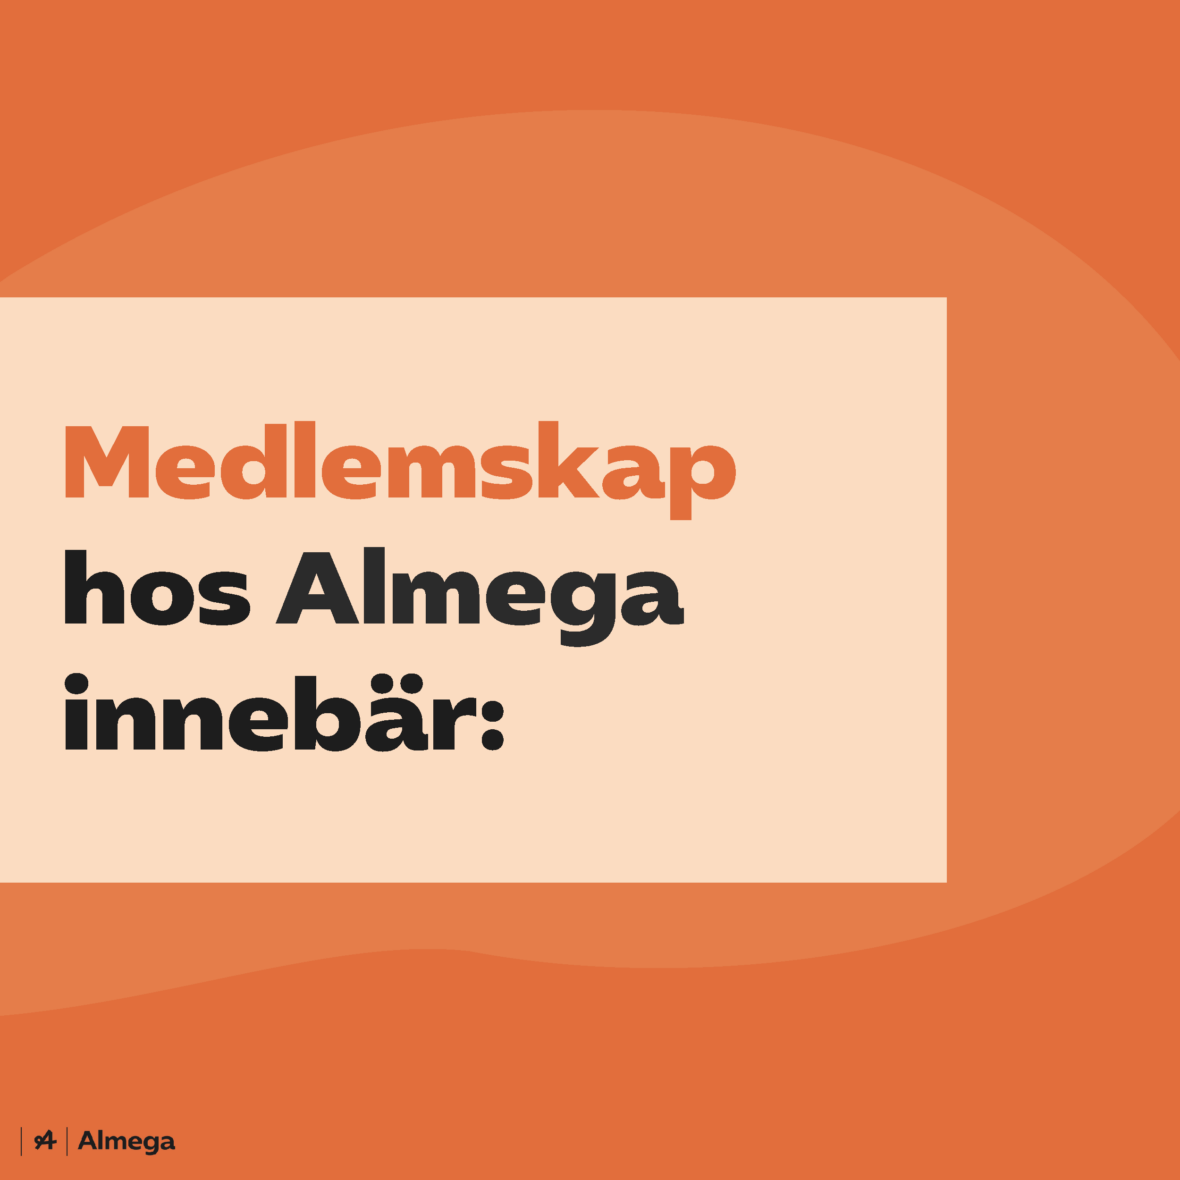 Orange bild med texten "Medlemskap hos Almega innebär:". Länk i bild går till almega.se sida om medlemskap.